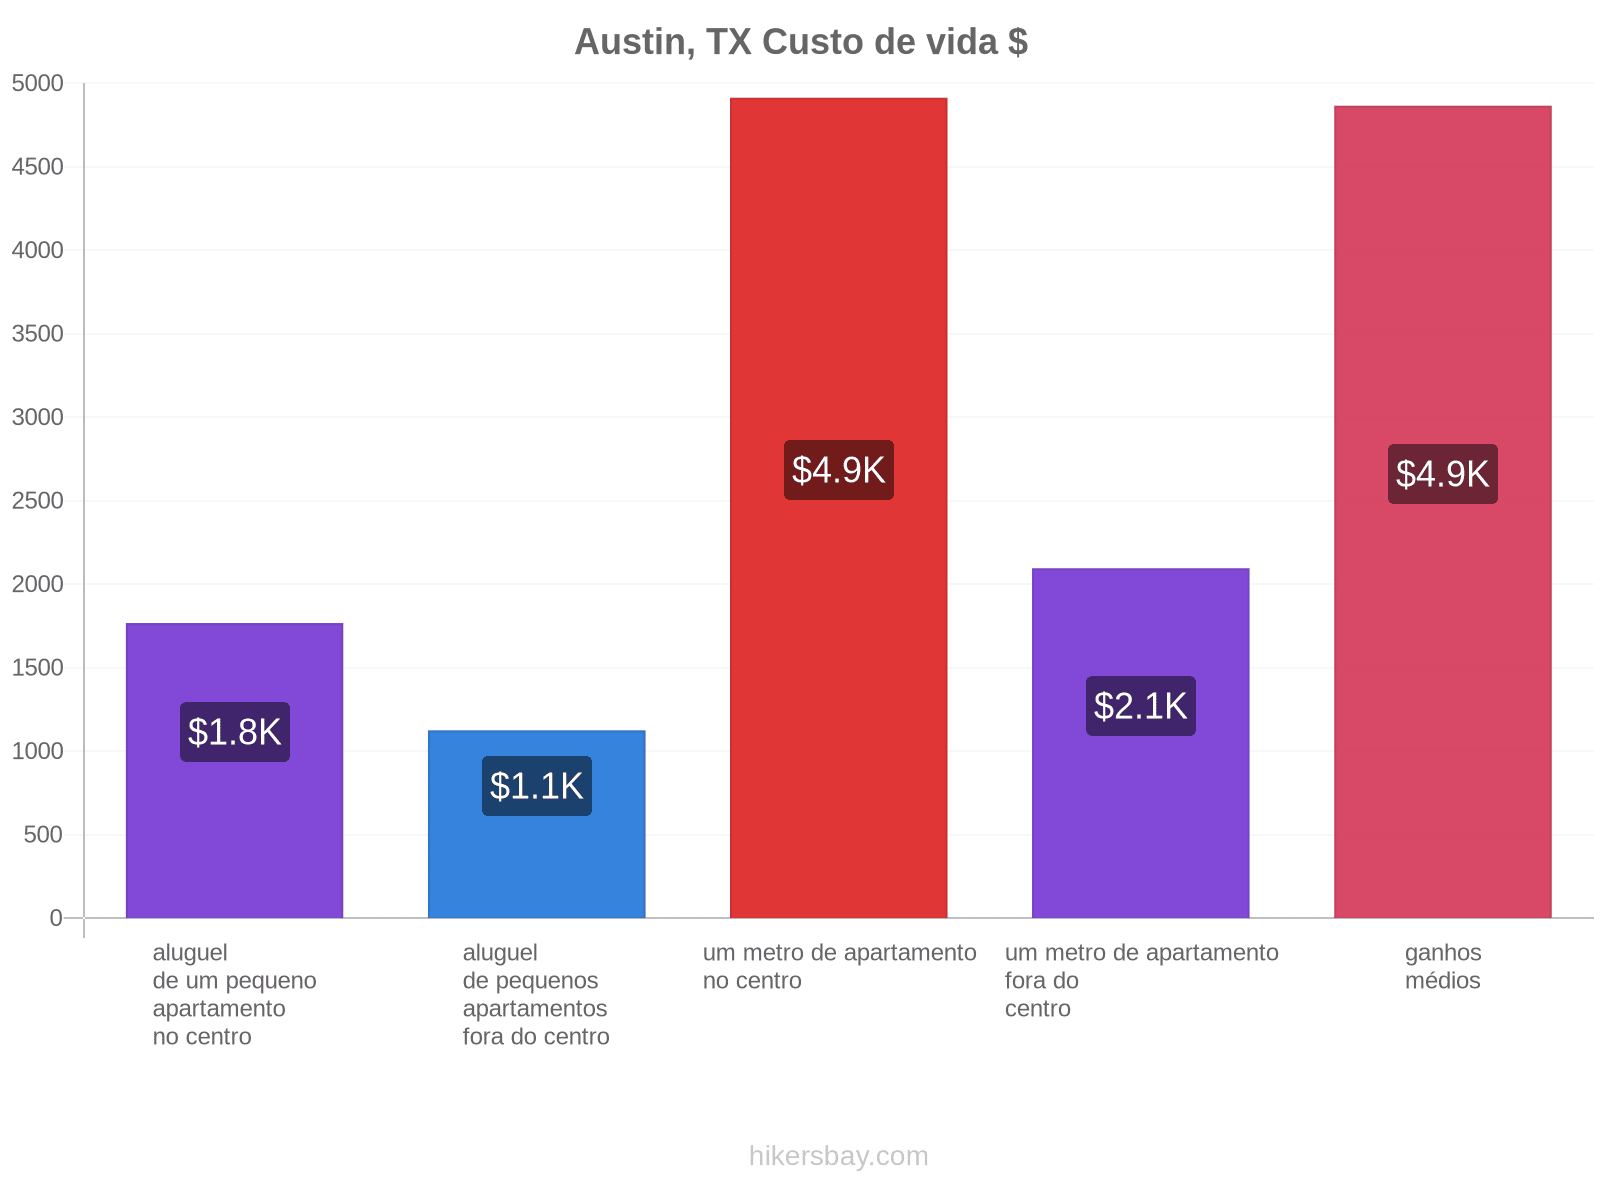 Austin, TX custo de vida hikersbay.com